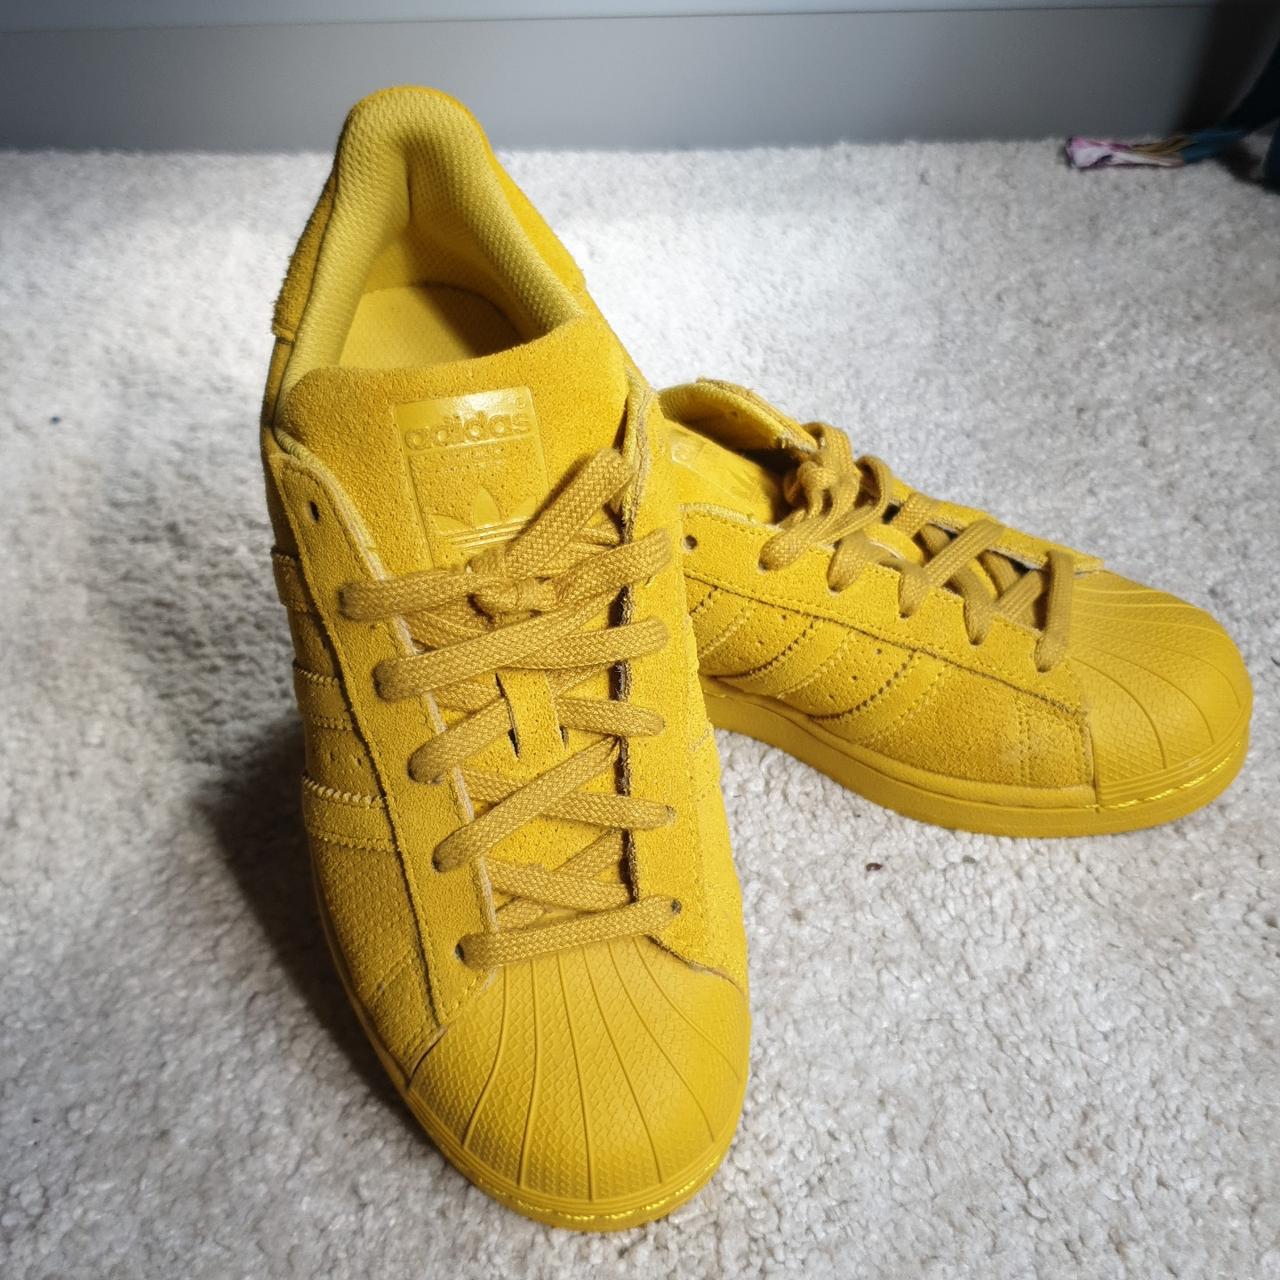 Eerder Rang Haringen 🍋 Brand NEW yellow suede Adidas Superstar trainers.... - Depop